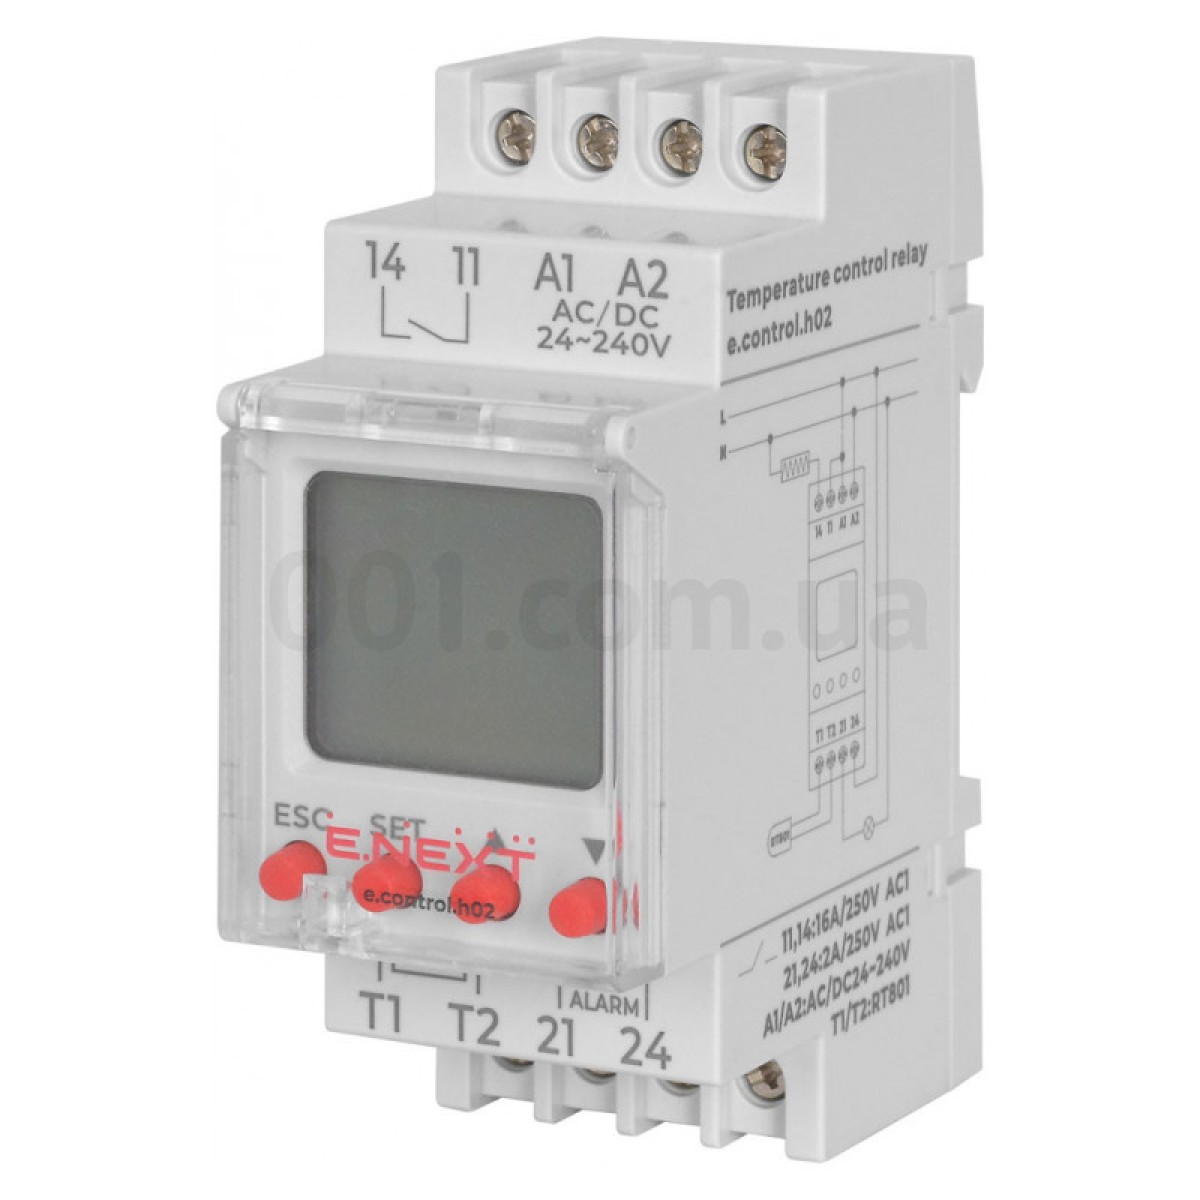 Реле контроля температуры с выносным датчиком e.control.h02 16А АС/DC 24-240 В, E.NEXT 256_256.jpg